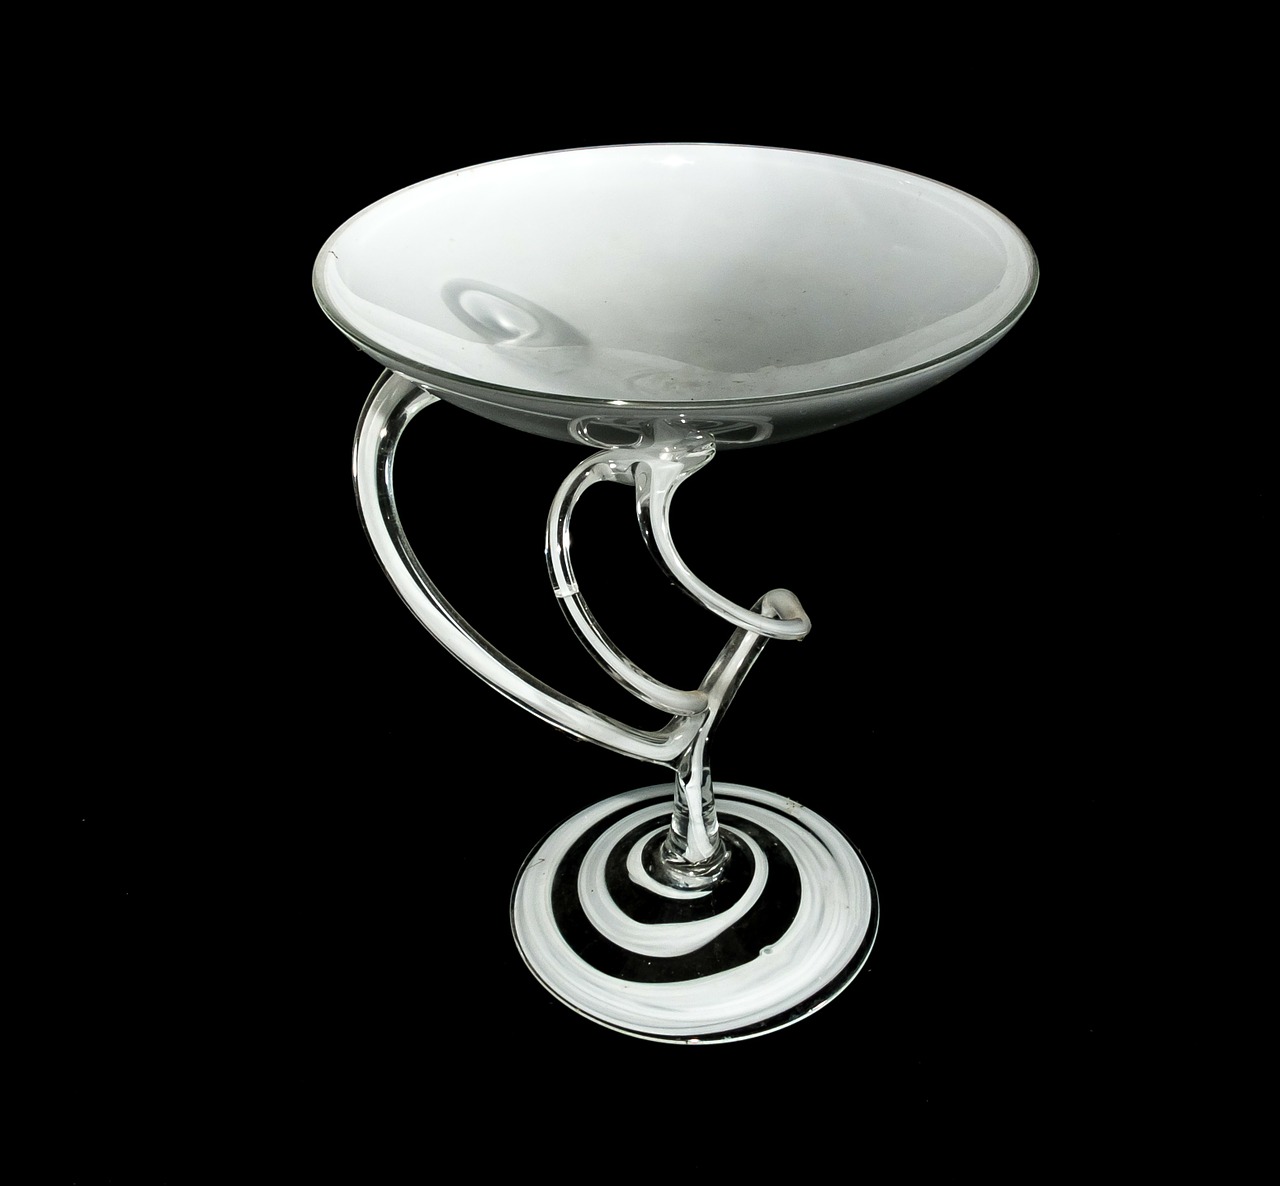 glass bowl decoration artfully swinging free photo